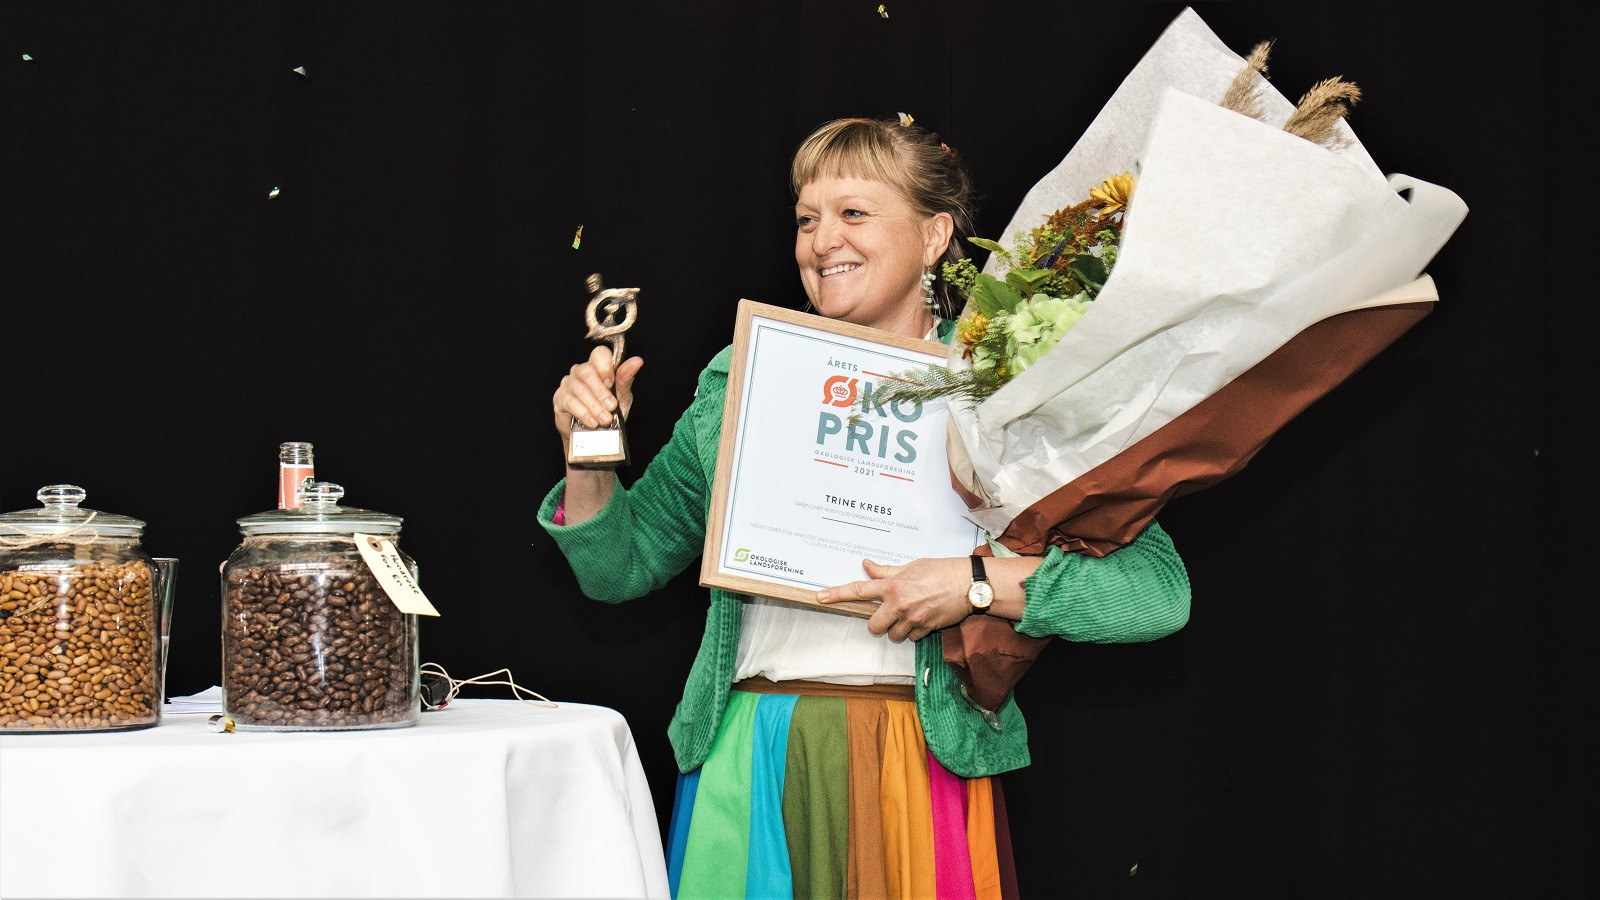 Trine Krebs med blomster efter modtagelsen af Økoprisen 2021